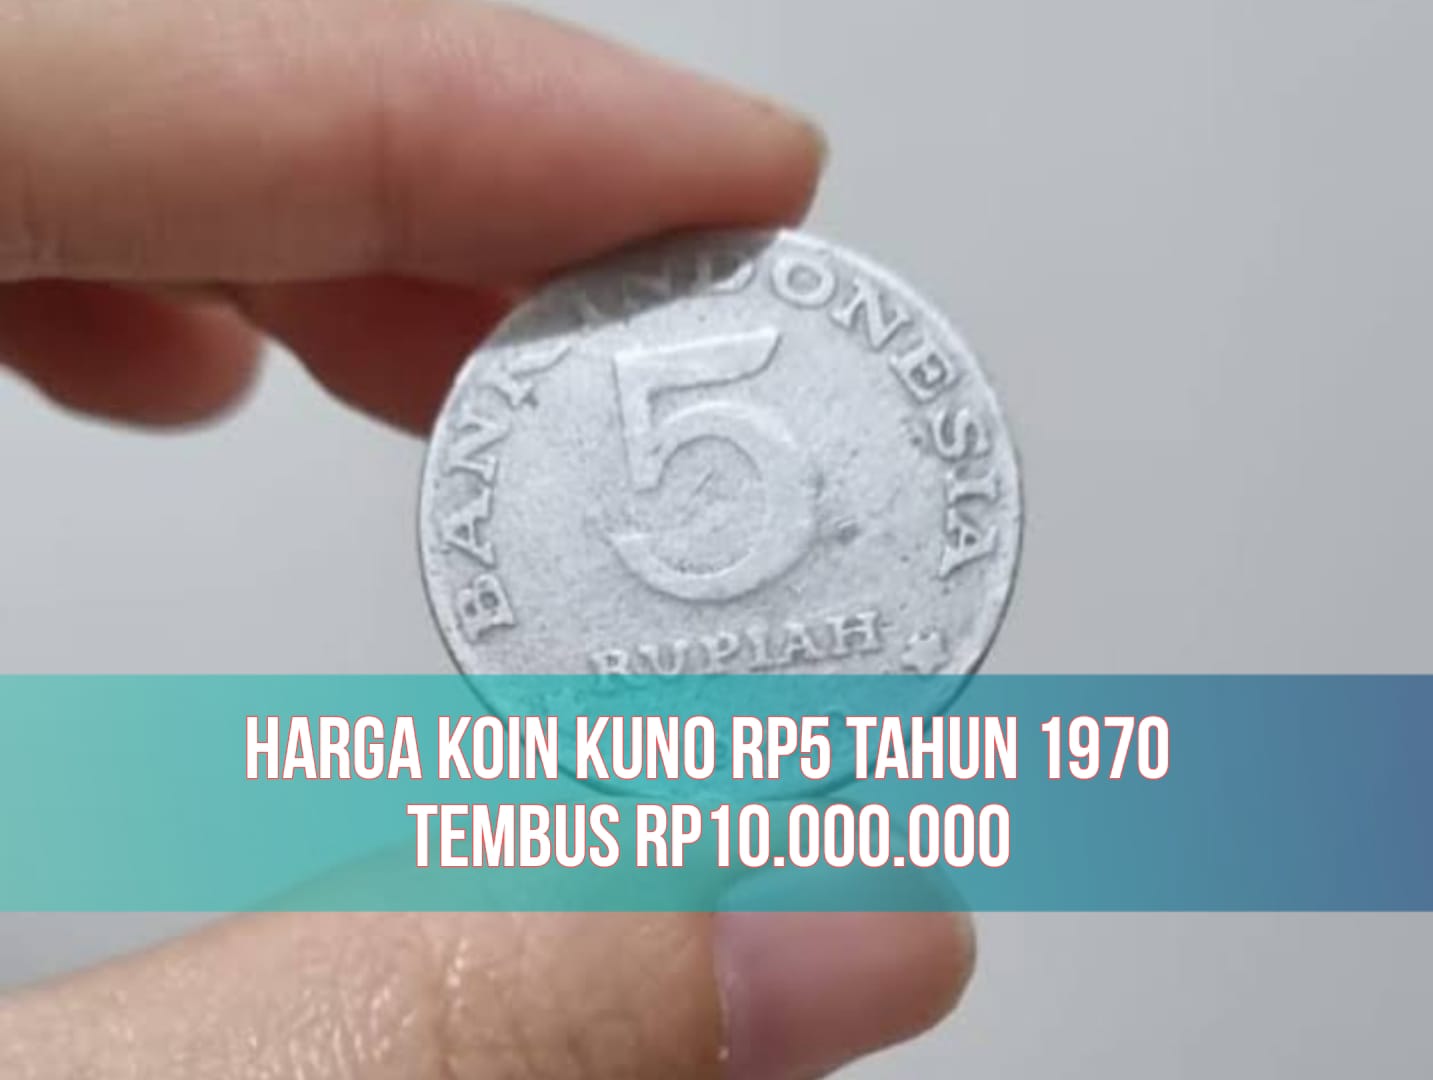 Rezeki Nomplok! Koin Kuno Rp5 Tahun 1970 Dijual Seharga Rp10.000.000, Buruan Cek Tempat Jualnya!